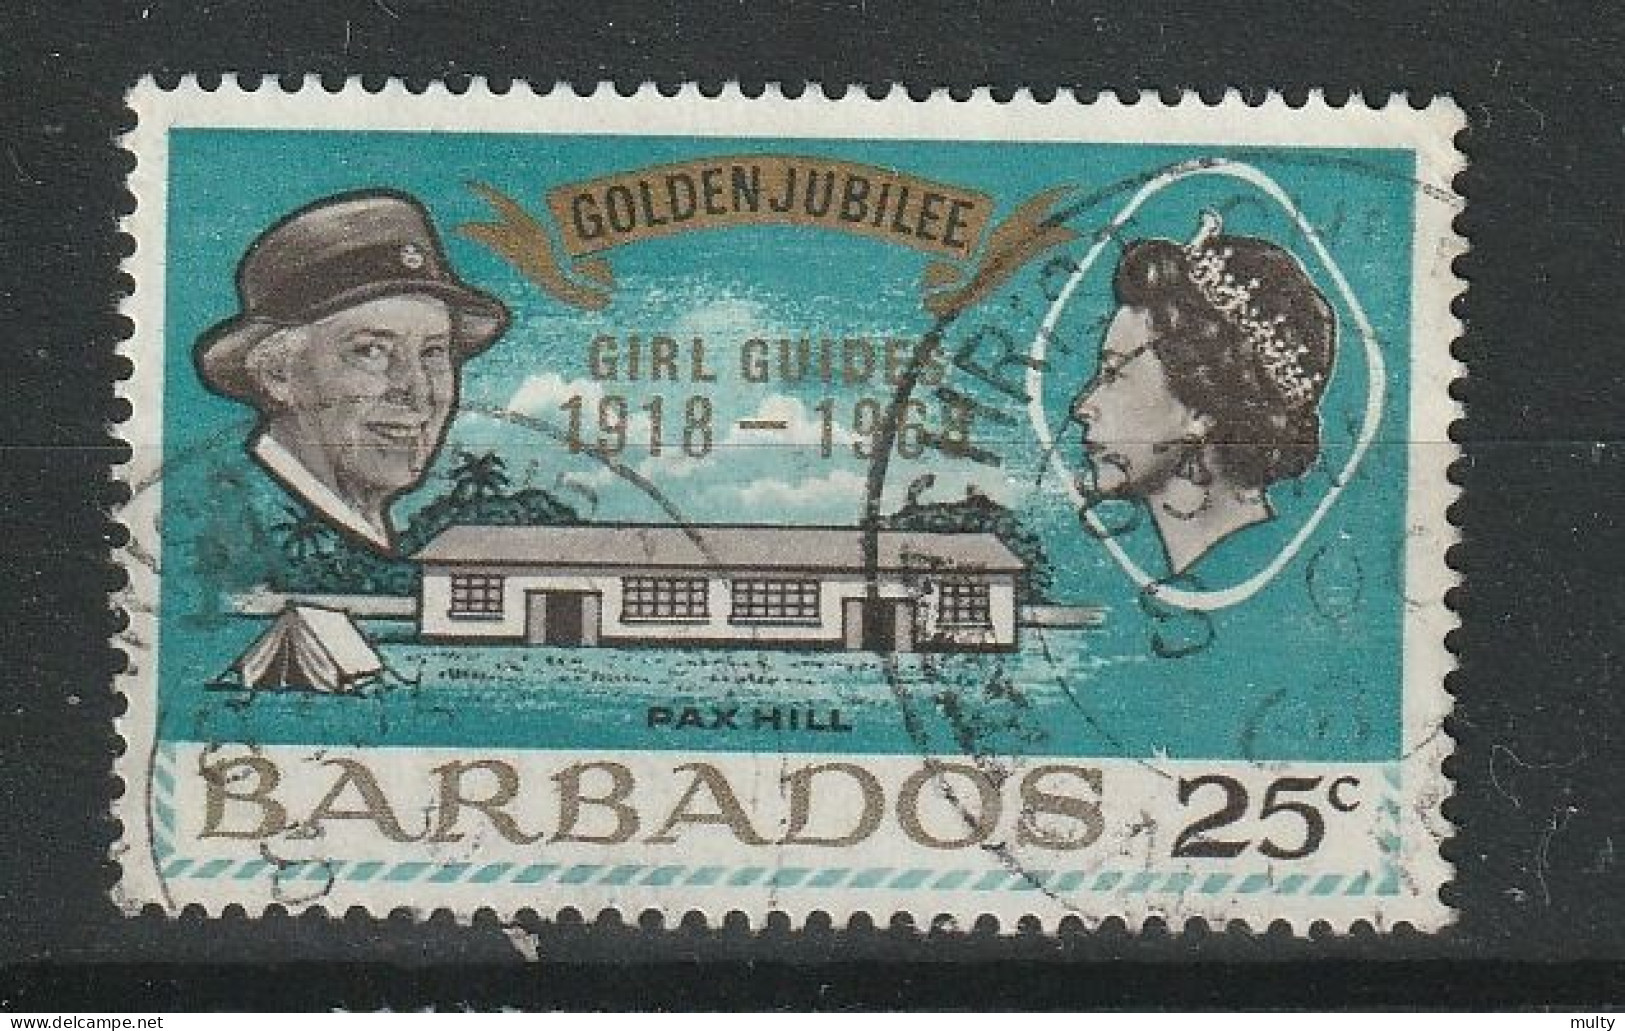 Barbados Y/T 284 (0) - Barbados (1966-...)